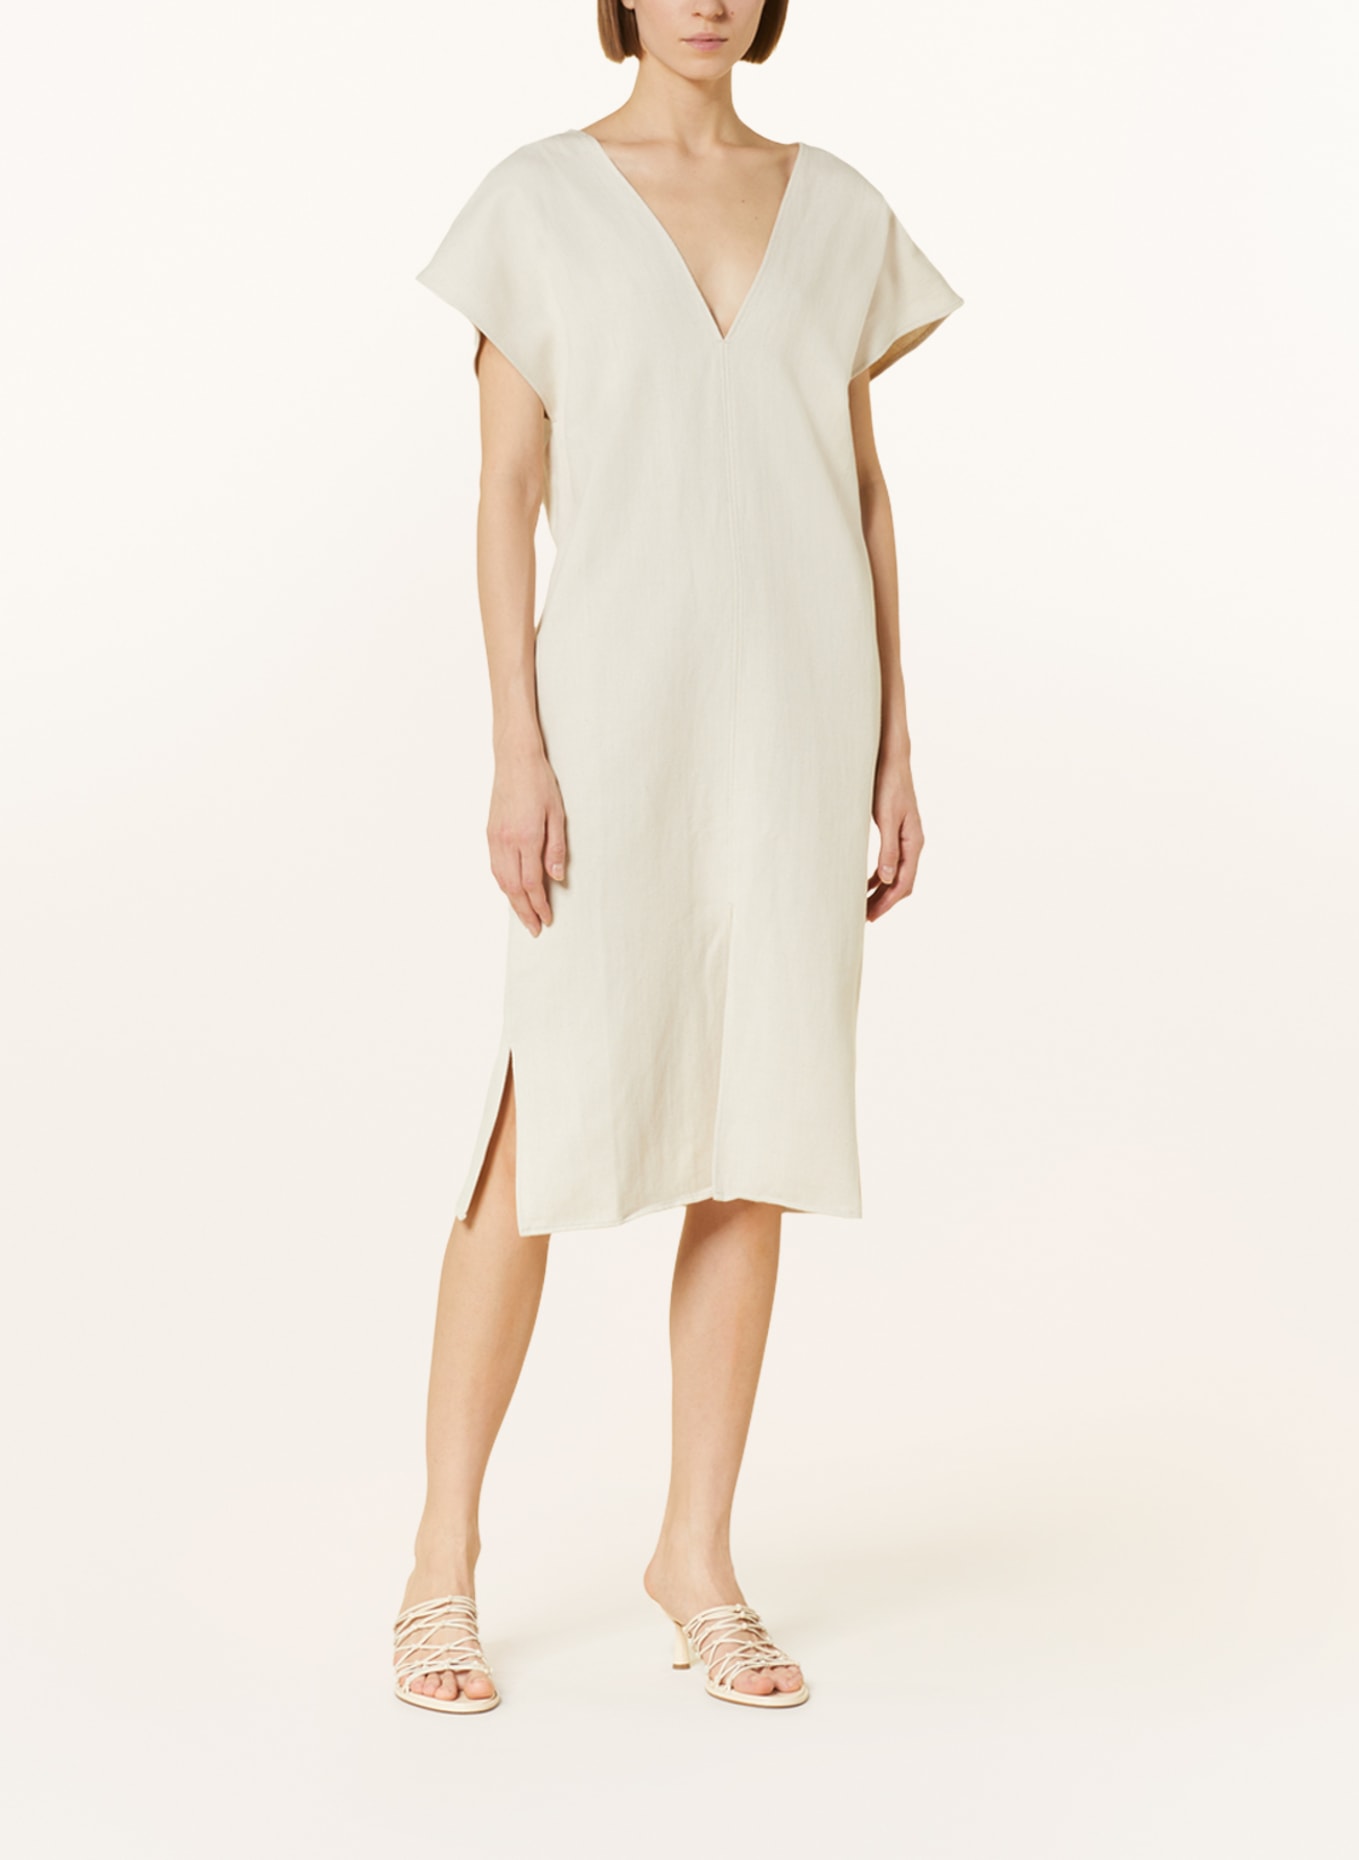 GITTA BANKO Kleid LUNA mit Leinen, Farbe: CREME (Bild 2)